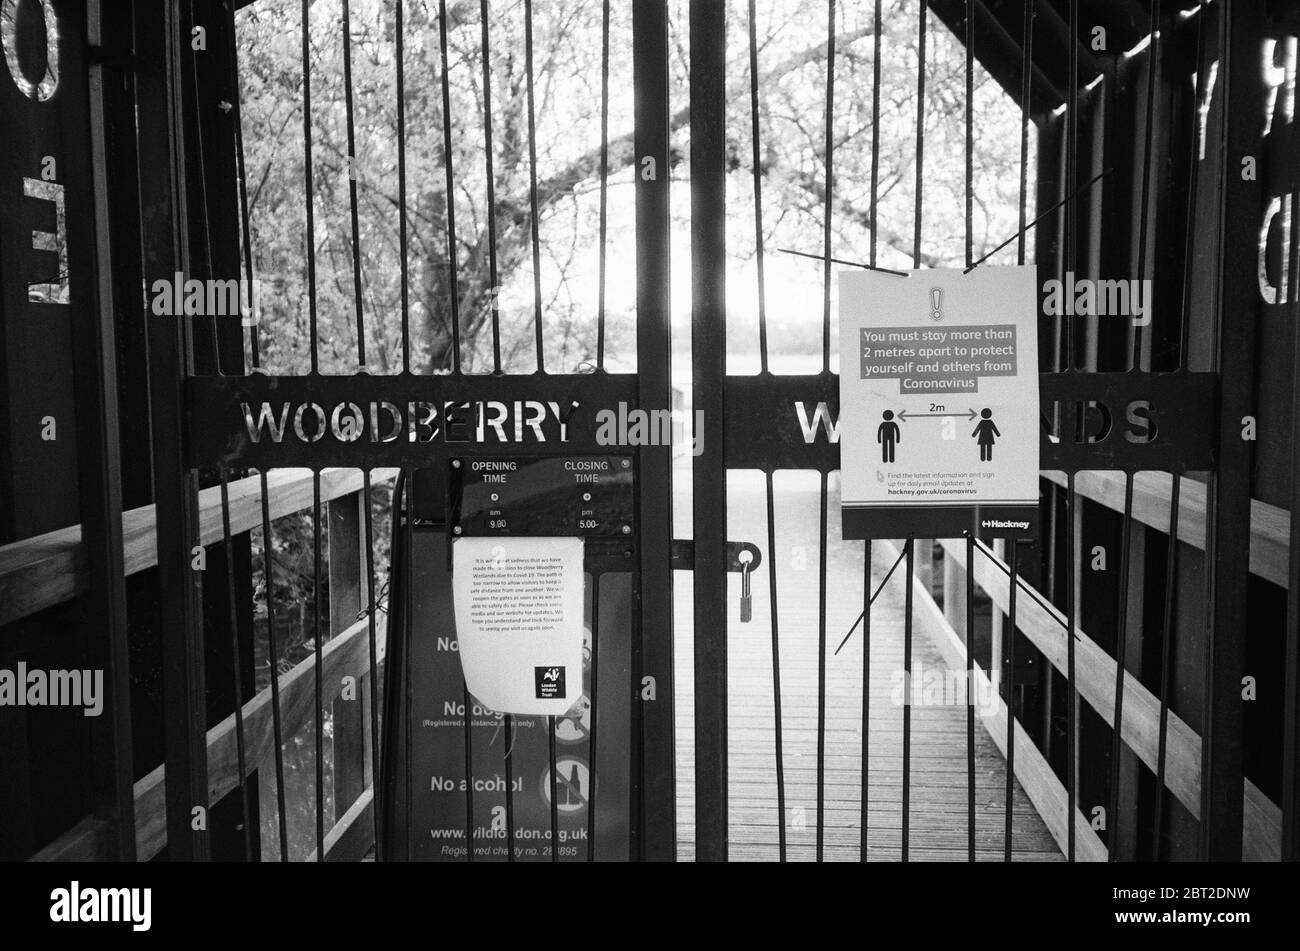 Las puertas de entrada cerradas a la reserva natural de Woodberry Wetlands, Stoke Newington, Londres del Norte, Reino Unido, con avisos de advertencia, durante la pandemia de Covid 19 Foto de stock